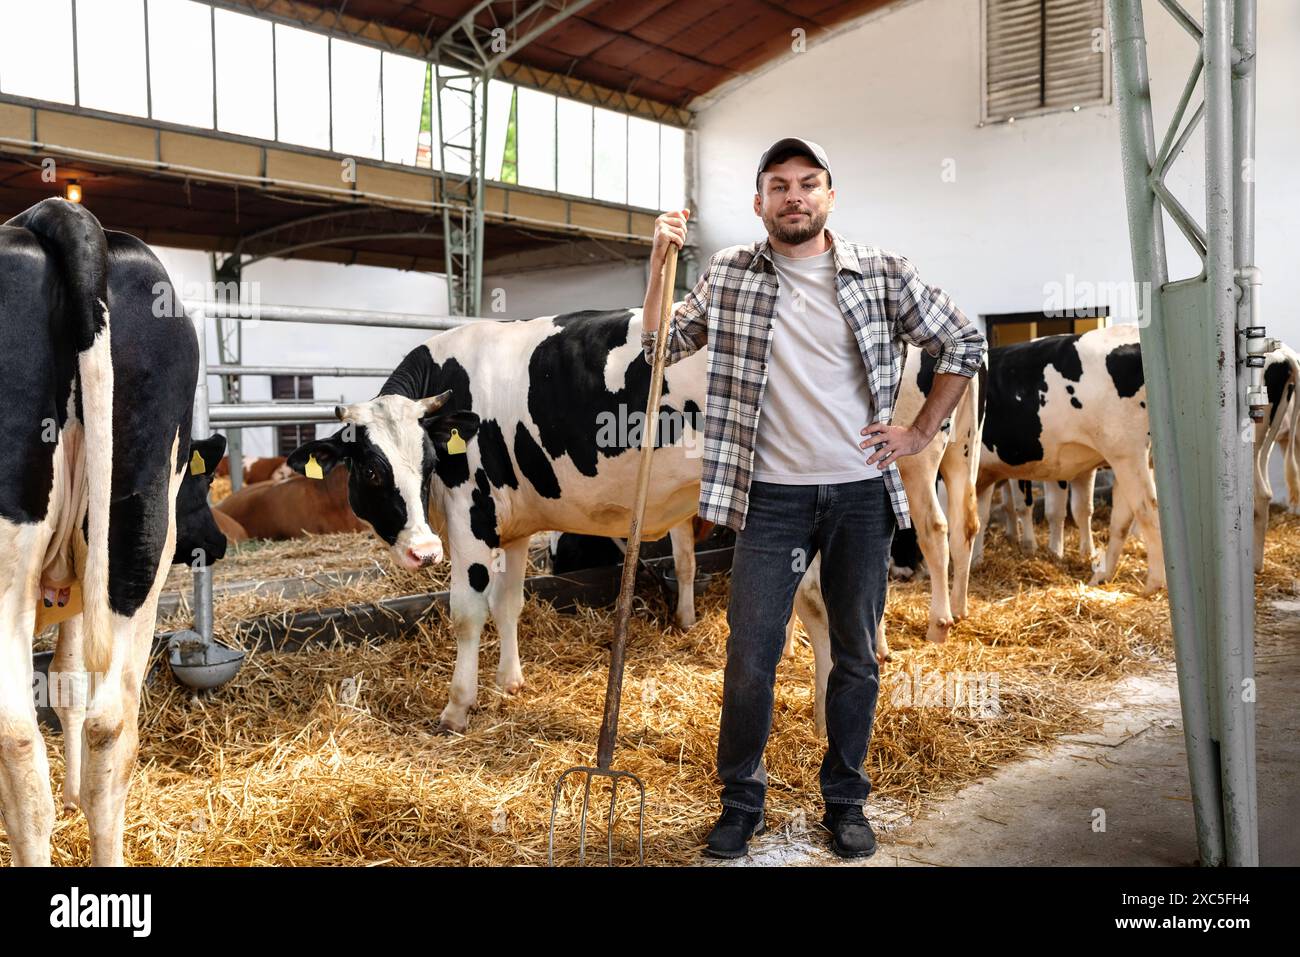 Portrait de l'homme ouvrier agricole avec fourche à la main devant des vaches noires et blanches sur l'élevage. Banque D'Images